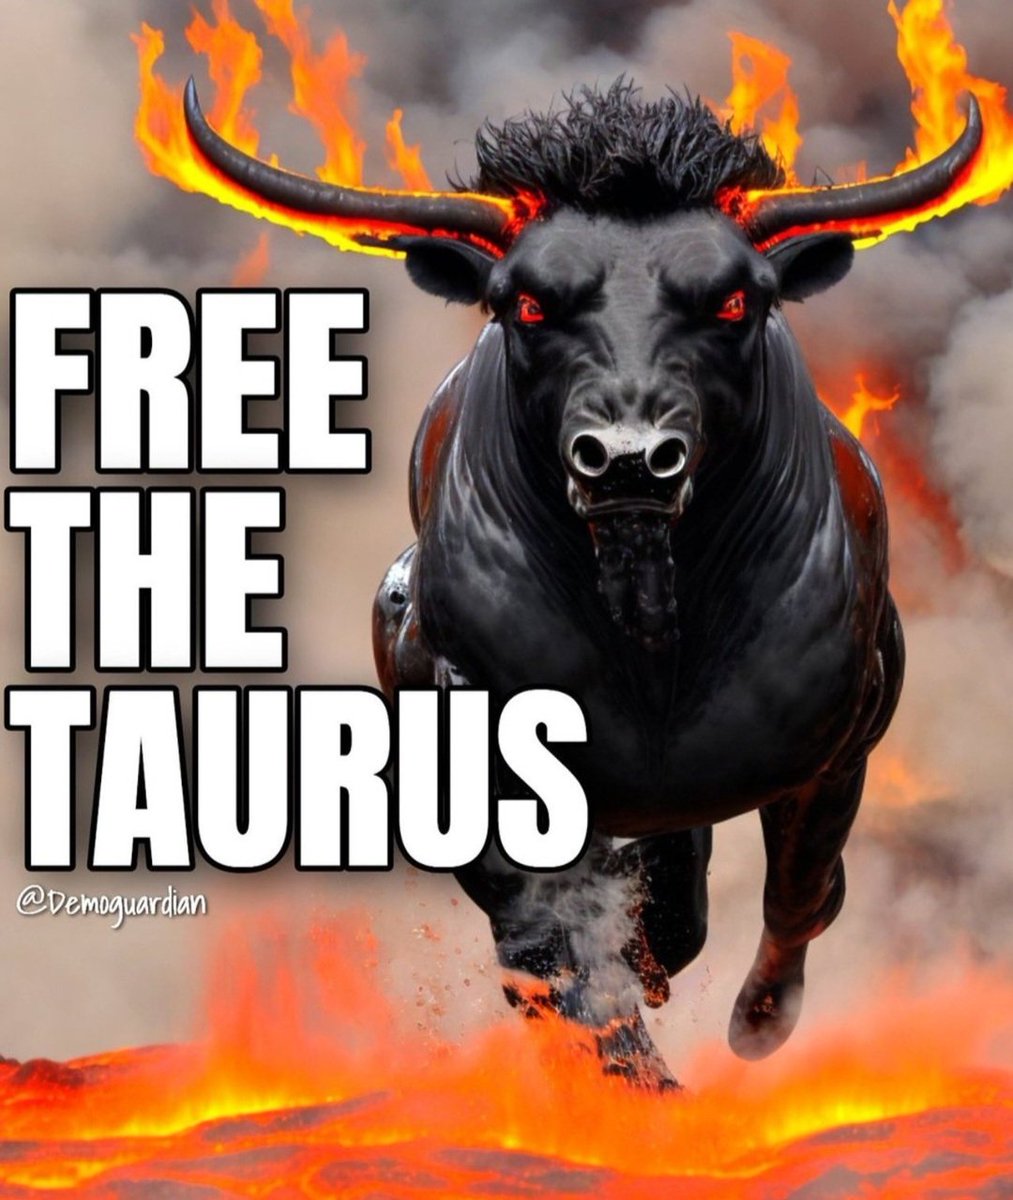 @Bundeskanzler Send #TaurusForUkraine